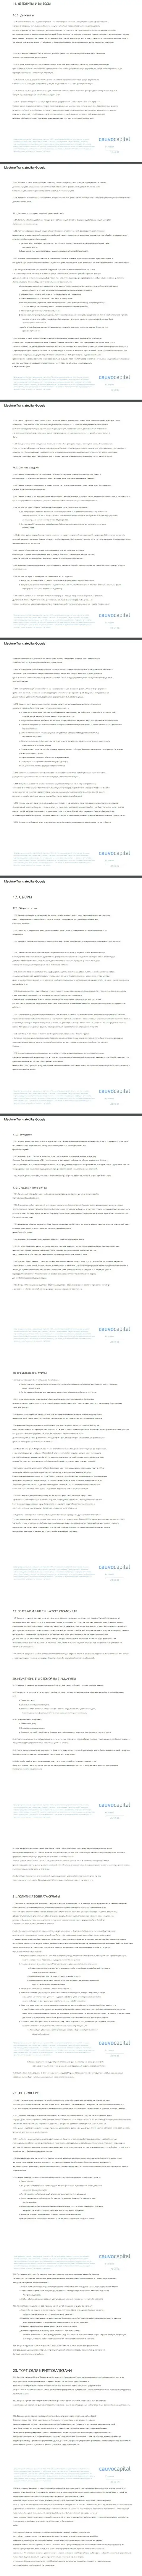 Часть третья пользовательского соглашения Форекс-организации Cauvo Capital